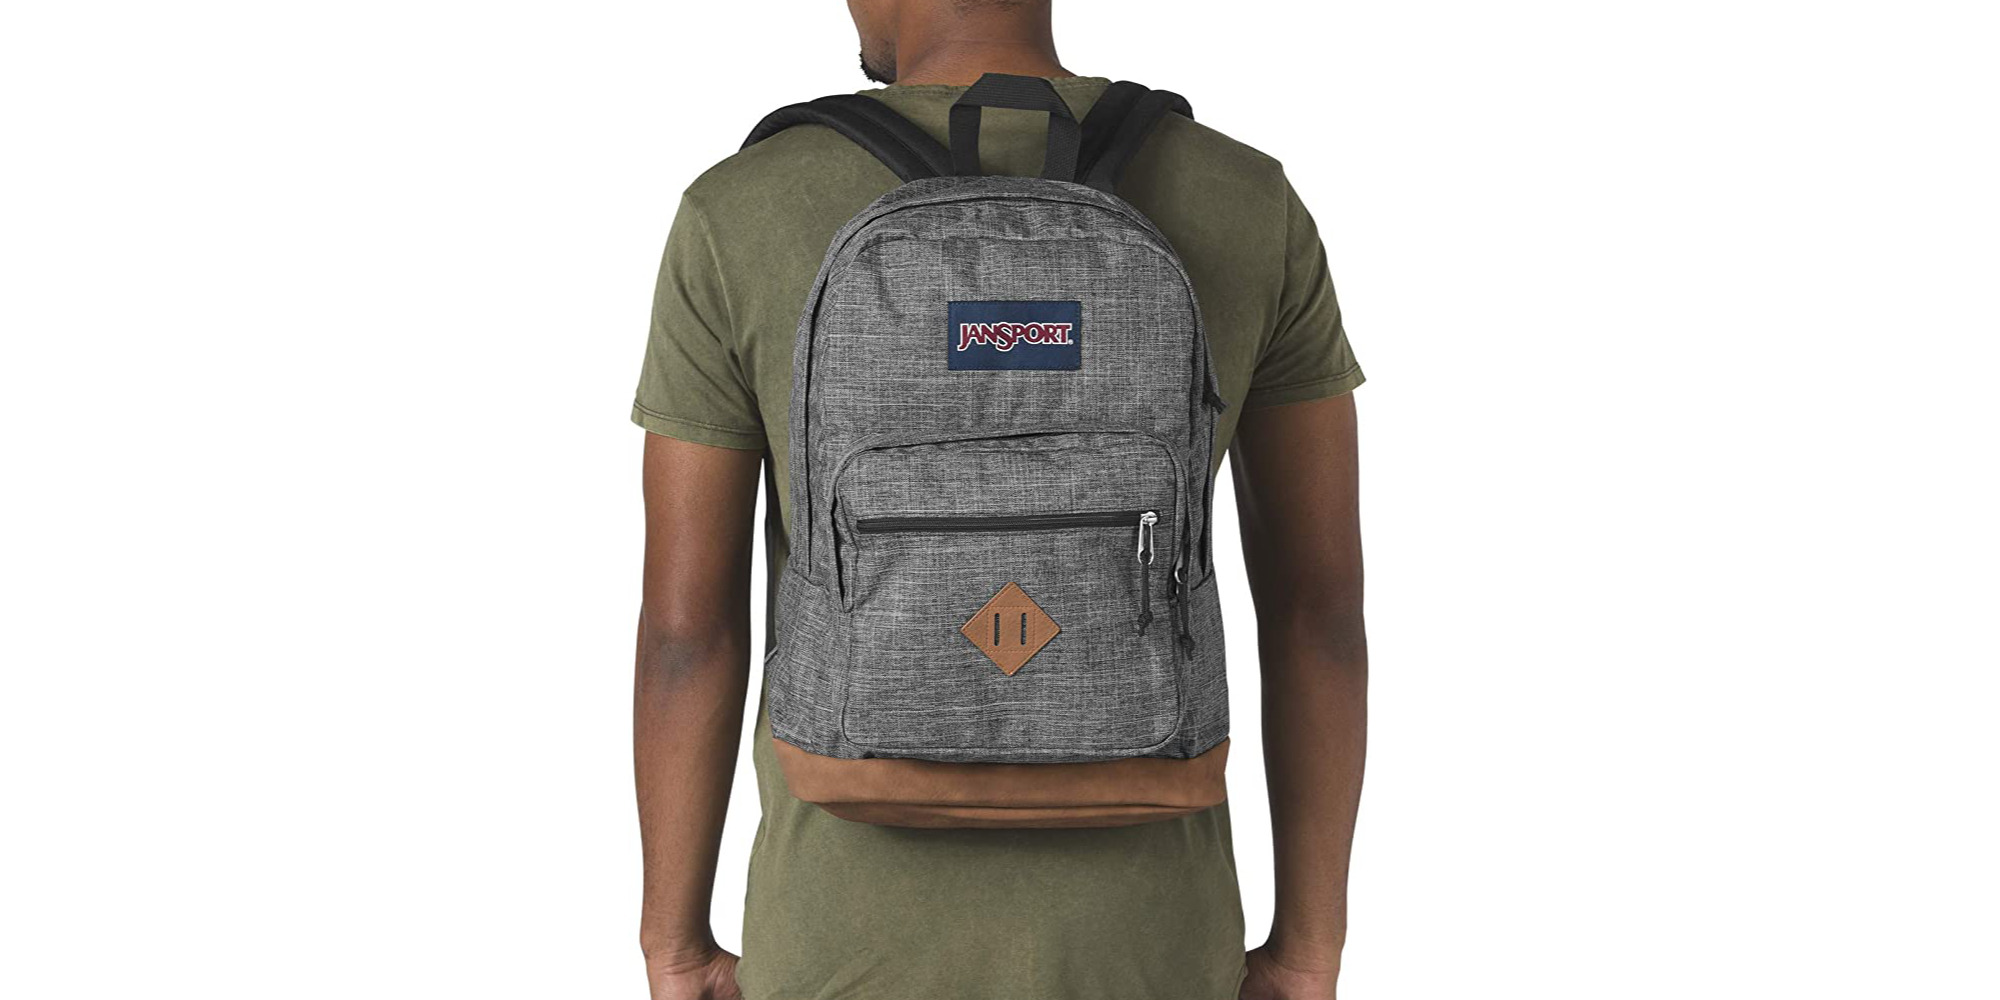 jansport backpack under $30